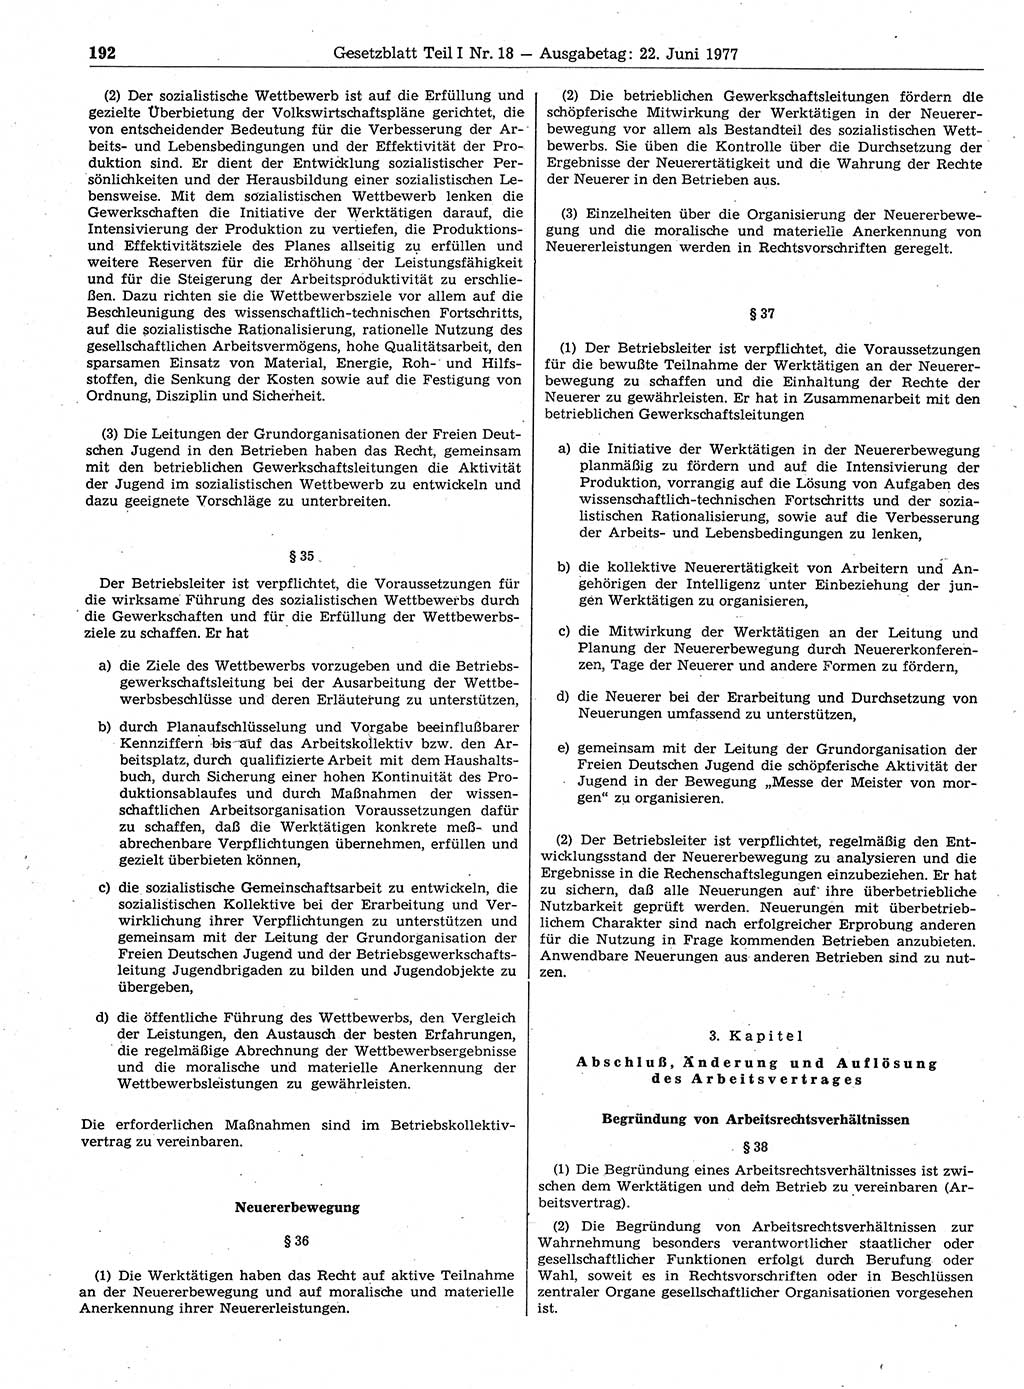 Gesetzblatt (GBl.) der Deutschen Demokratischen Republik (DDR) Teil Ⅰ 1977, Seite 192 (GBl. DDR Ⅰ 1977, S. 192)